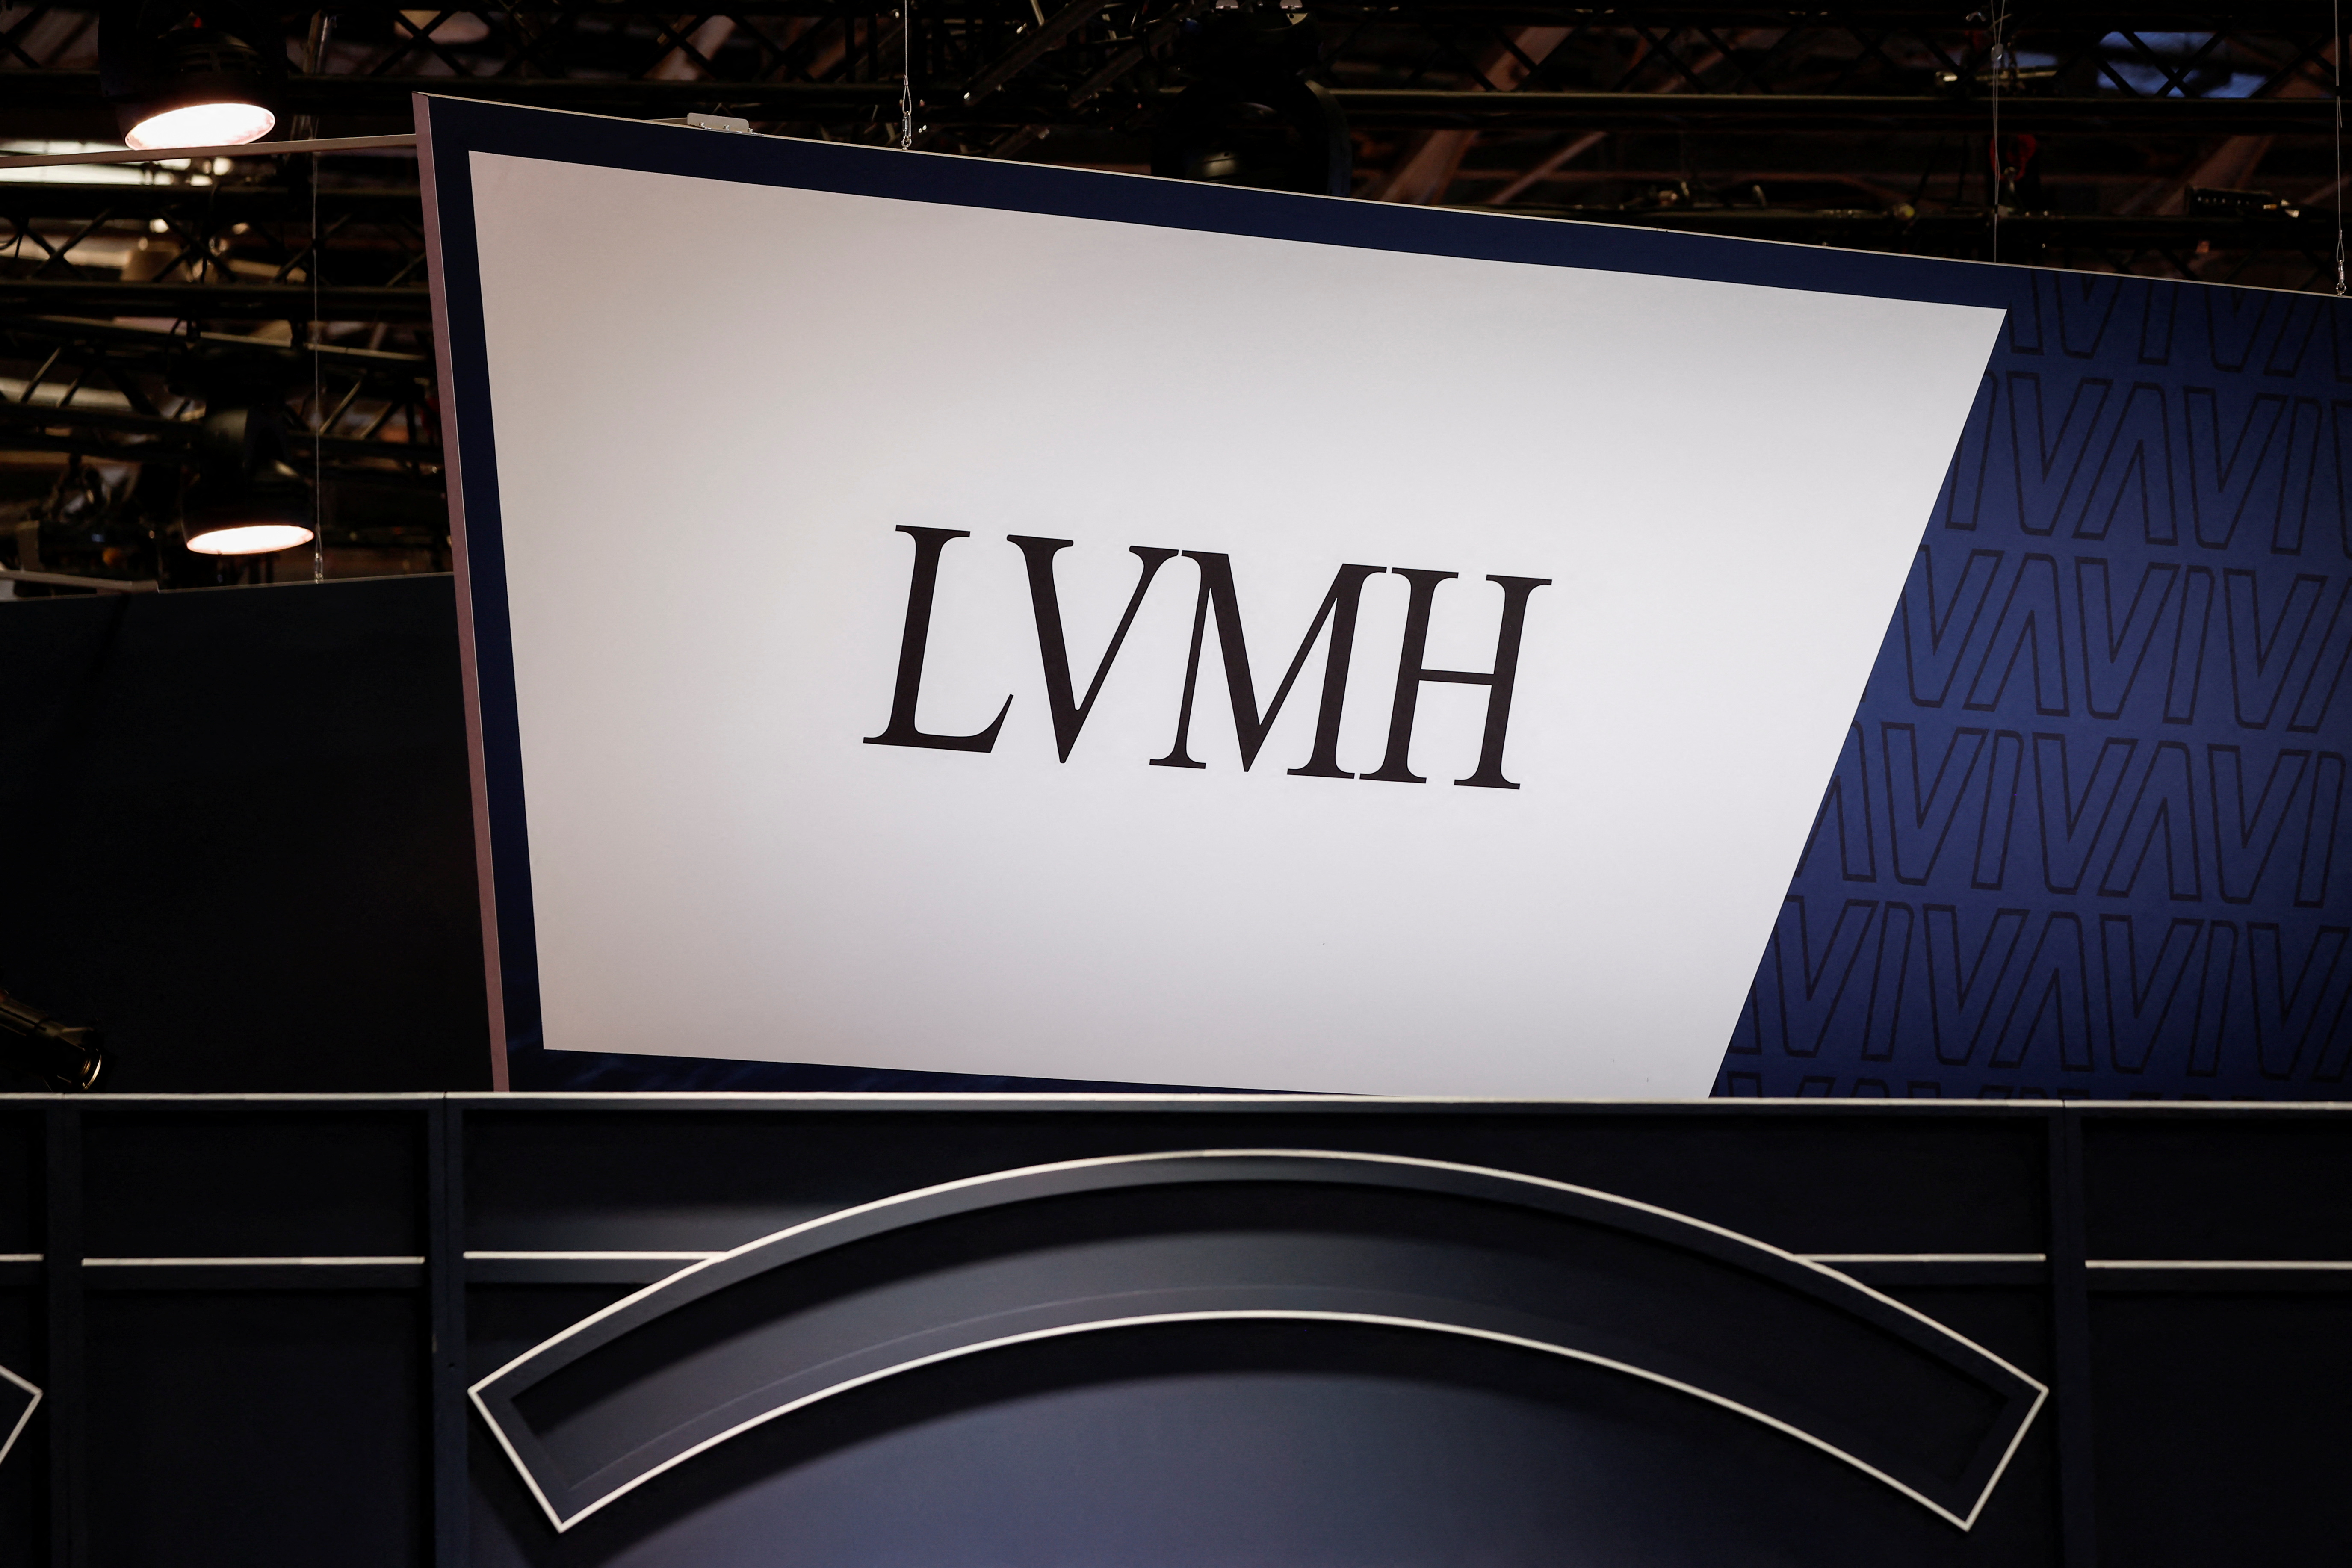 Partner LVMH  Vivatechnology